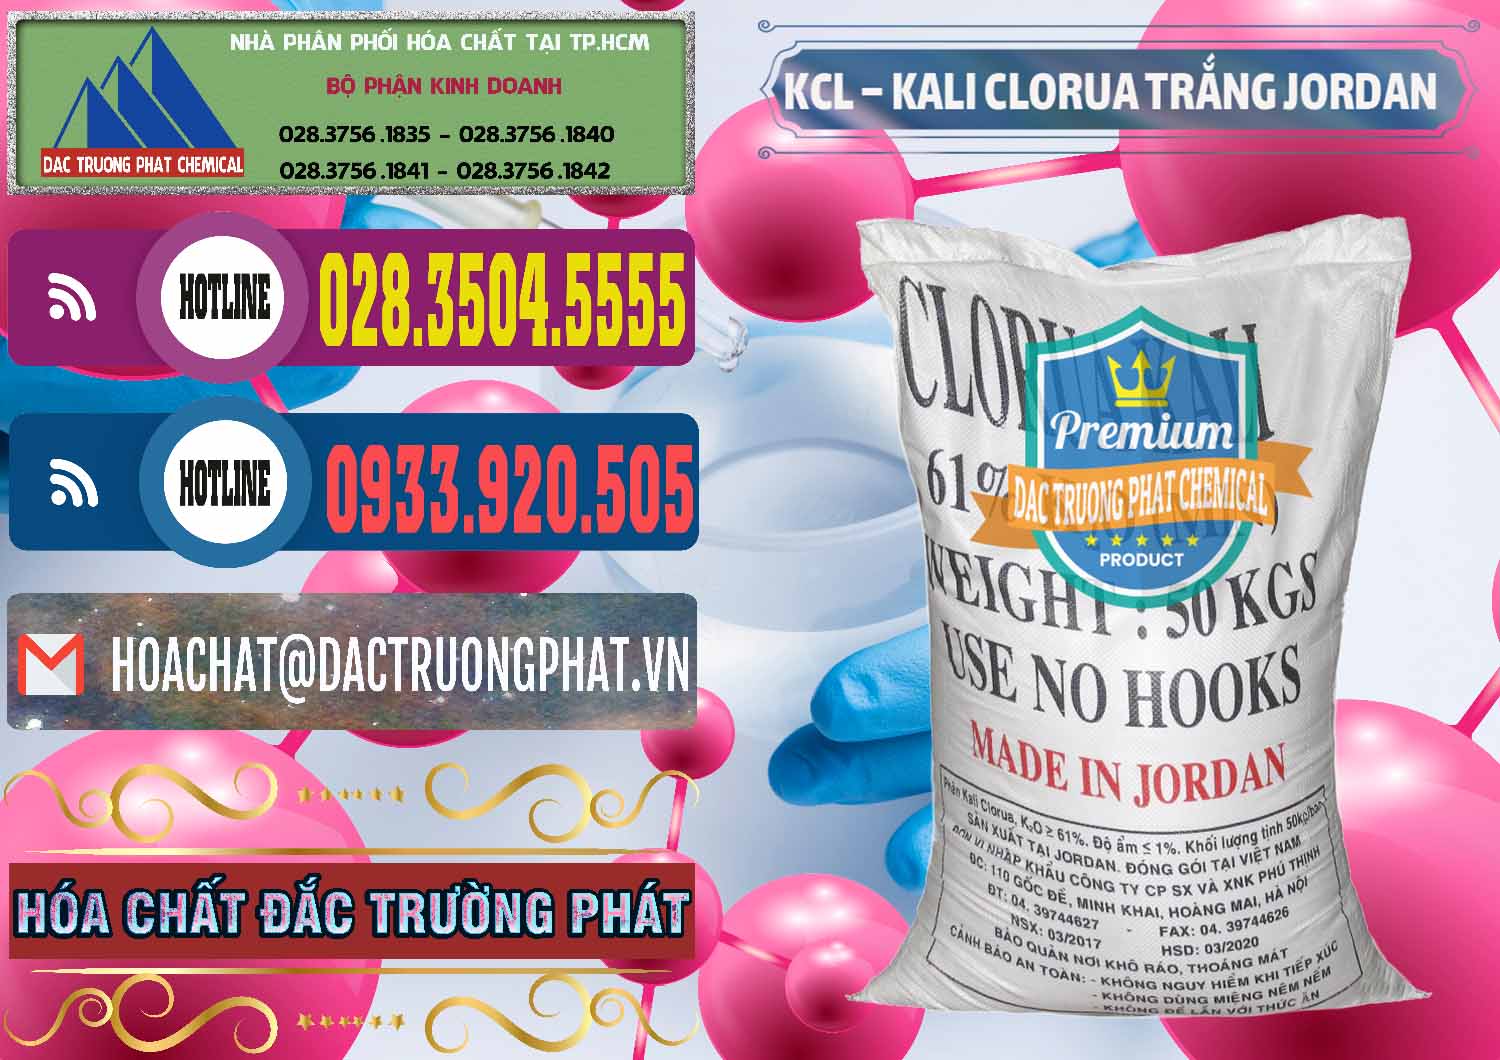 Công ty bán _ cung ứng KCL – Kali Clorua Trắng Jordan - 0088 - Đơn vị chuyên nhập khẩu và cung cấp hóa chất tại TP.HCM - muabanhoachat.com.vn